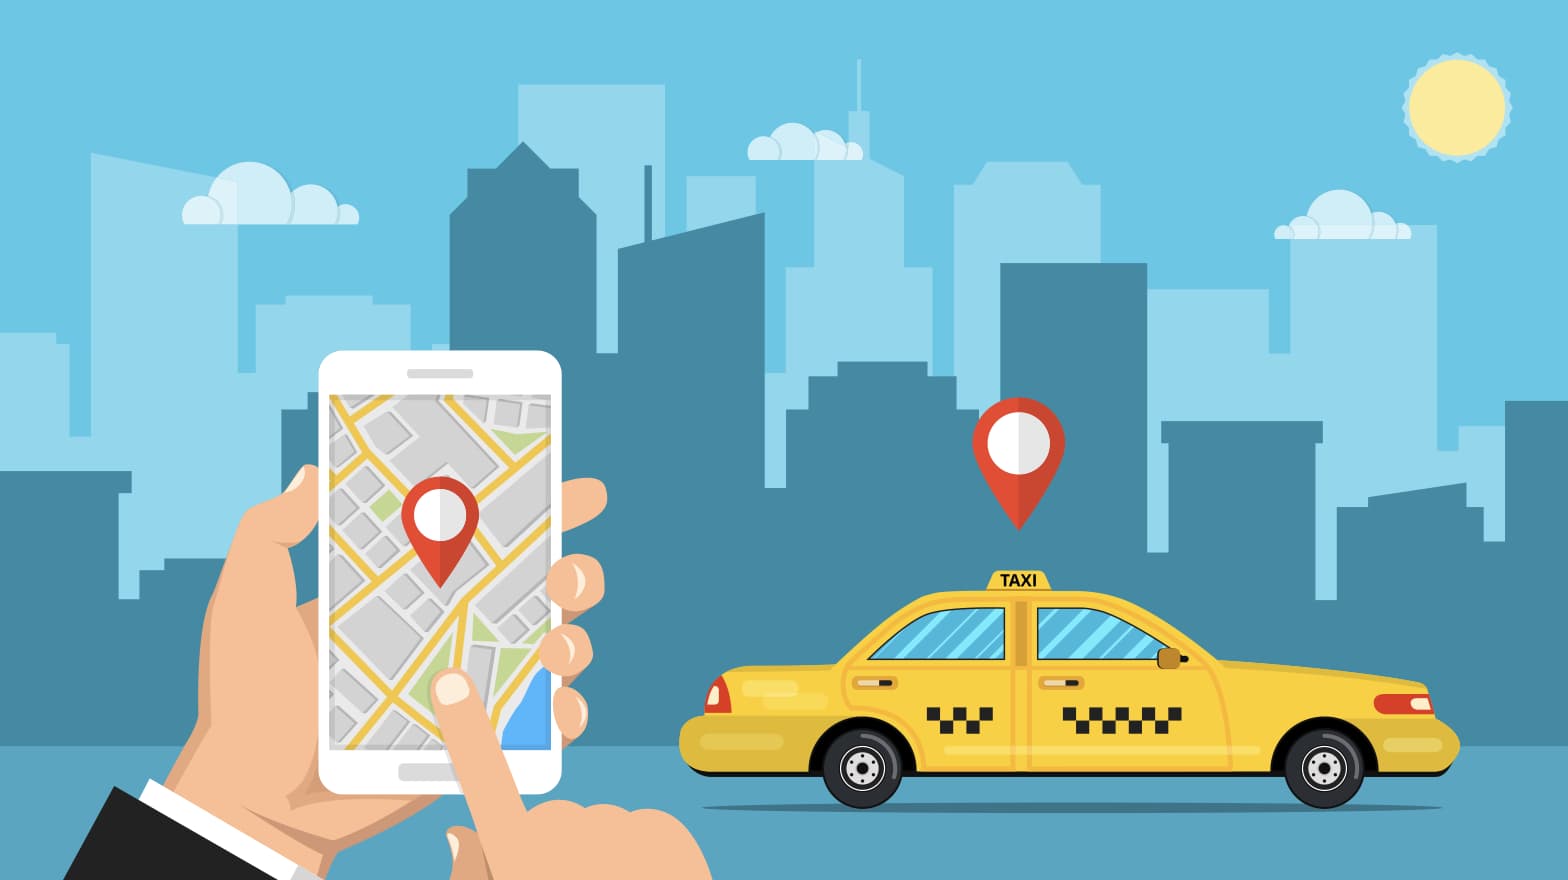 久留米で使えるタクシーアプリとクーポン情報